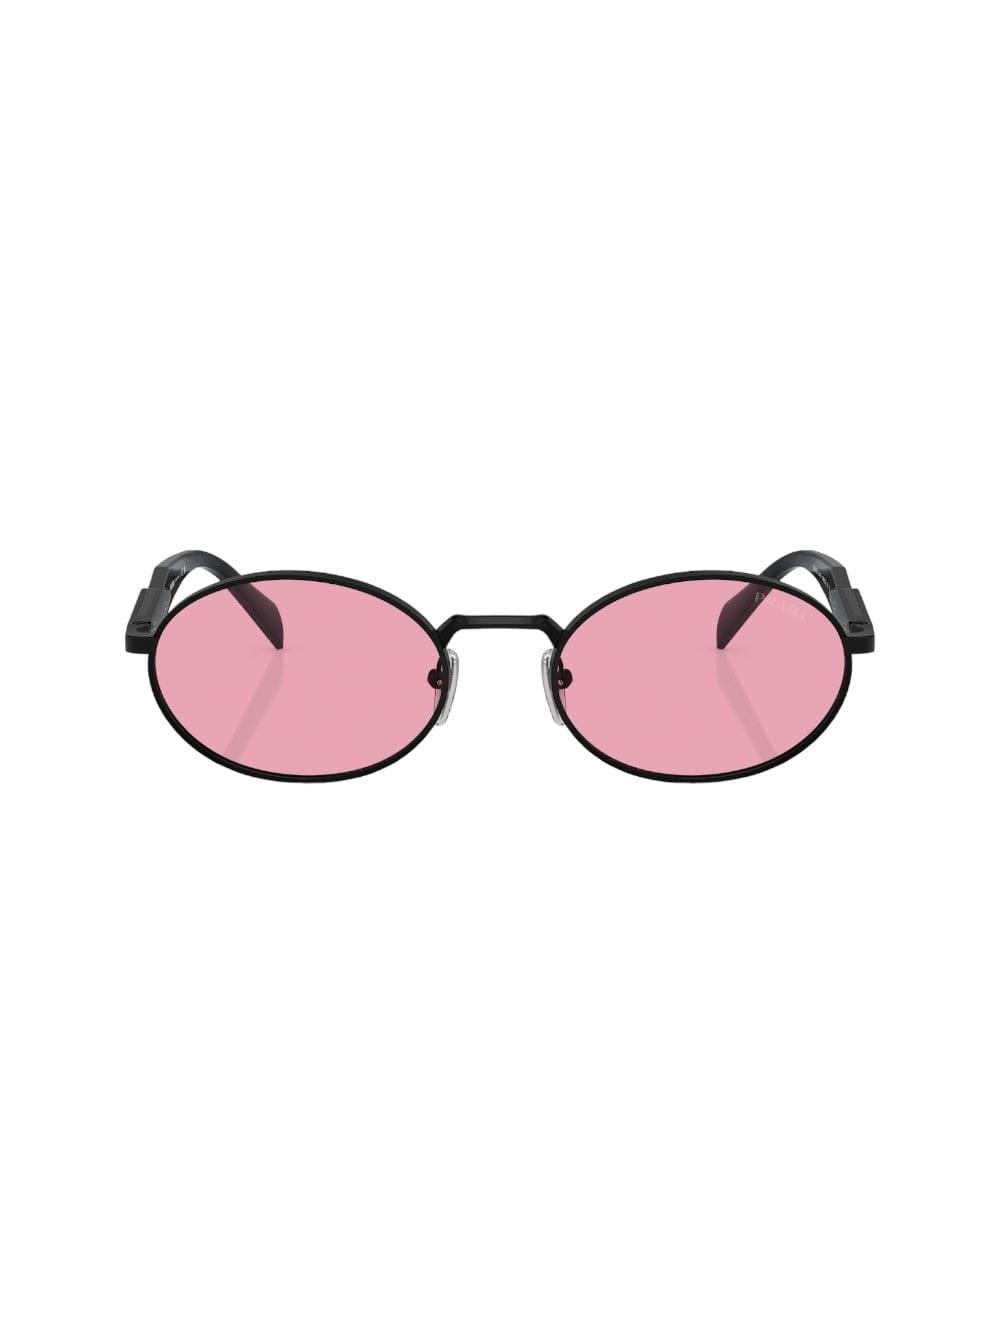 Prada Opr 65zs - Black Sunglasses In Pink